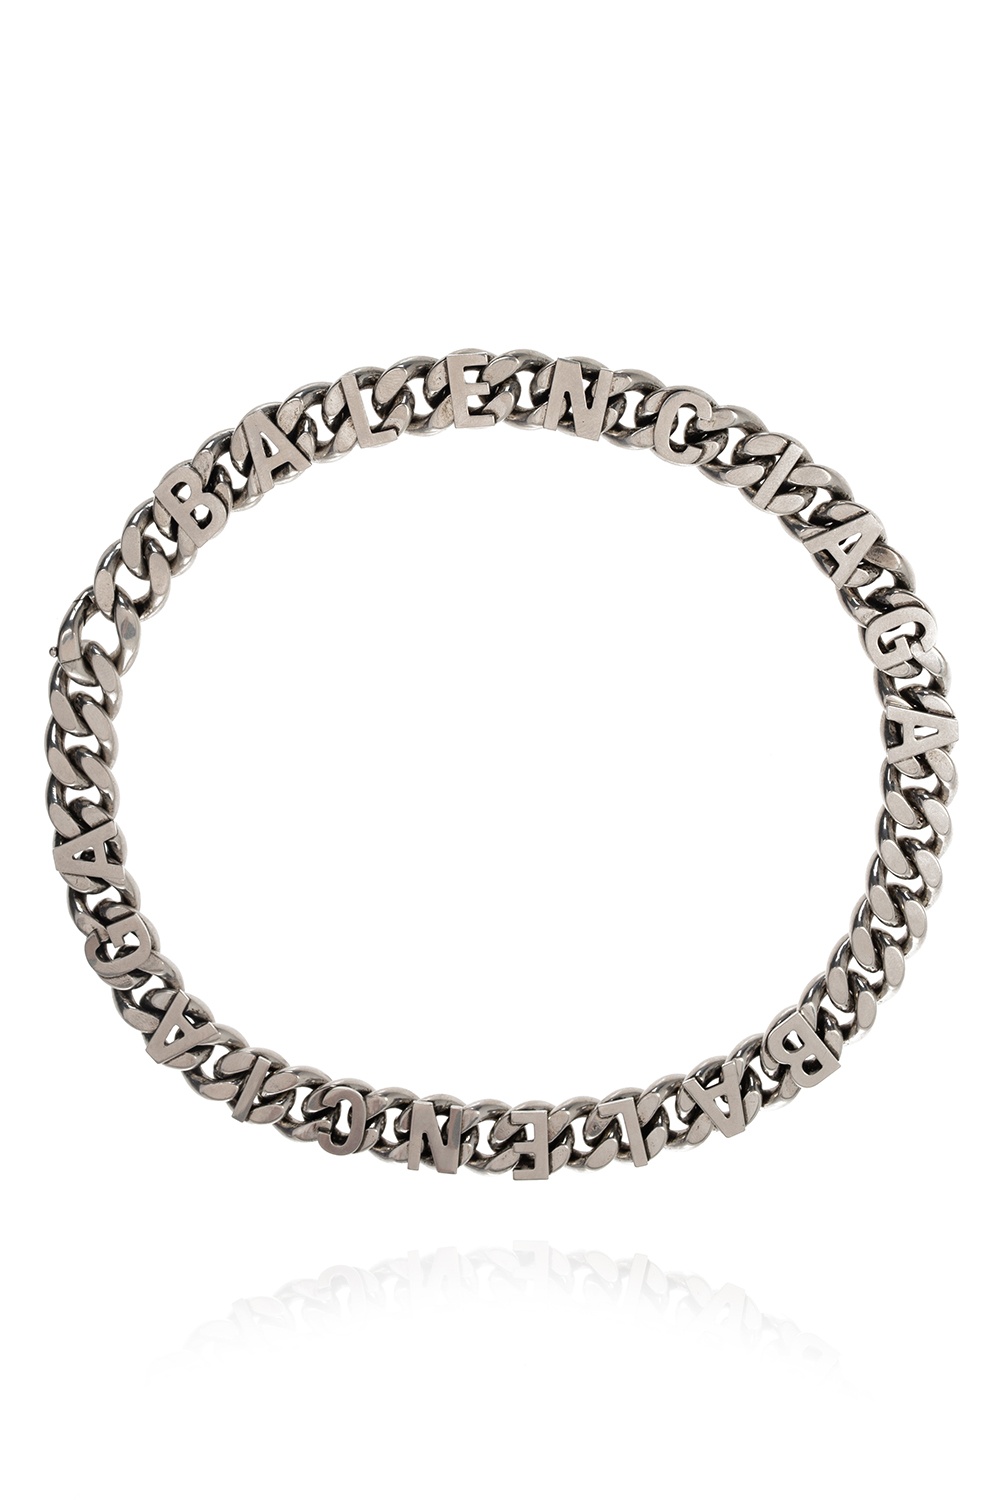 Balenciaga  Silver B Chain Necklace  VSP Consignment